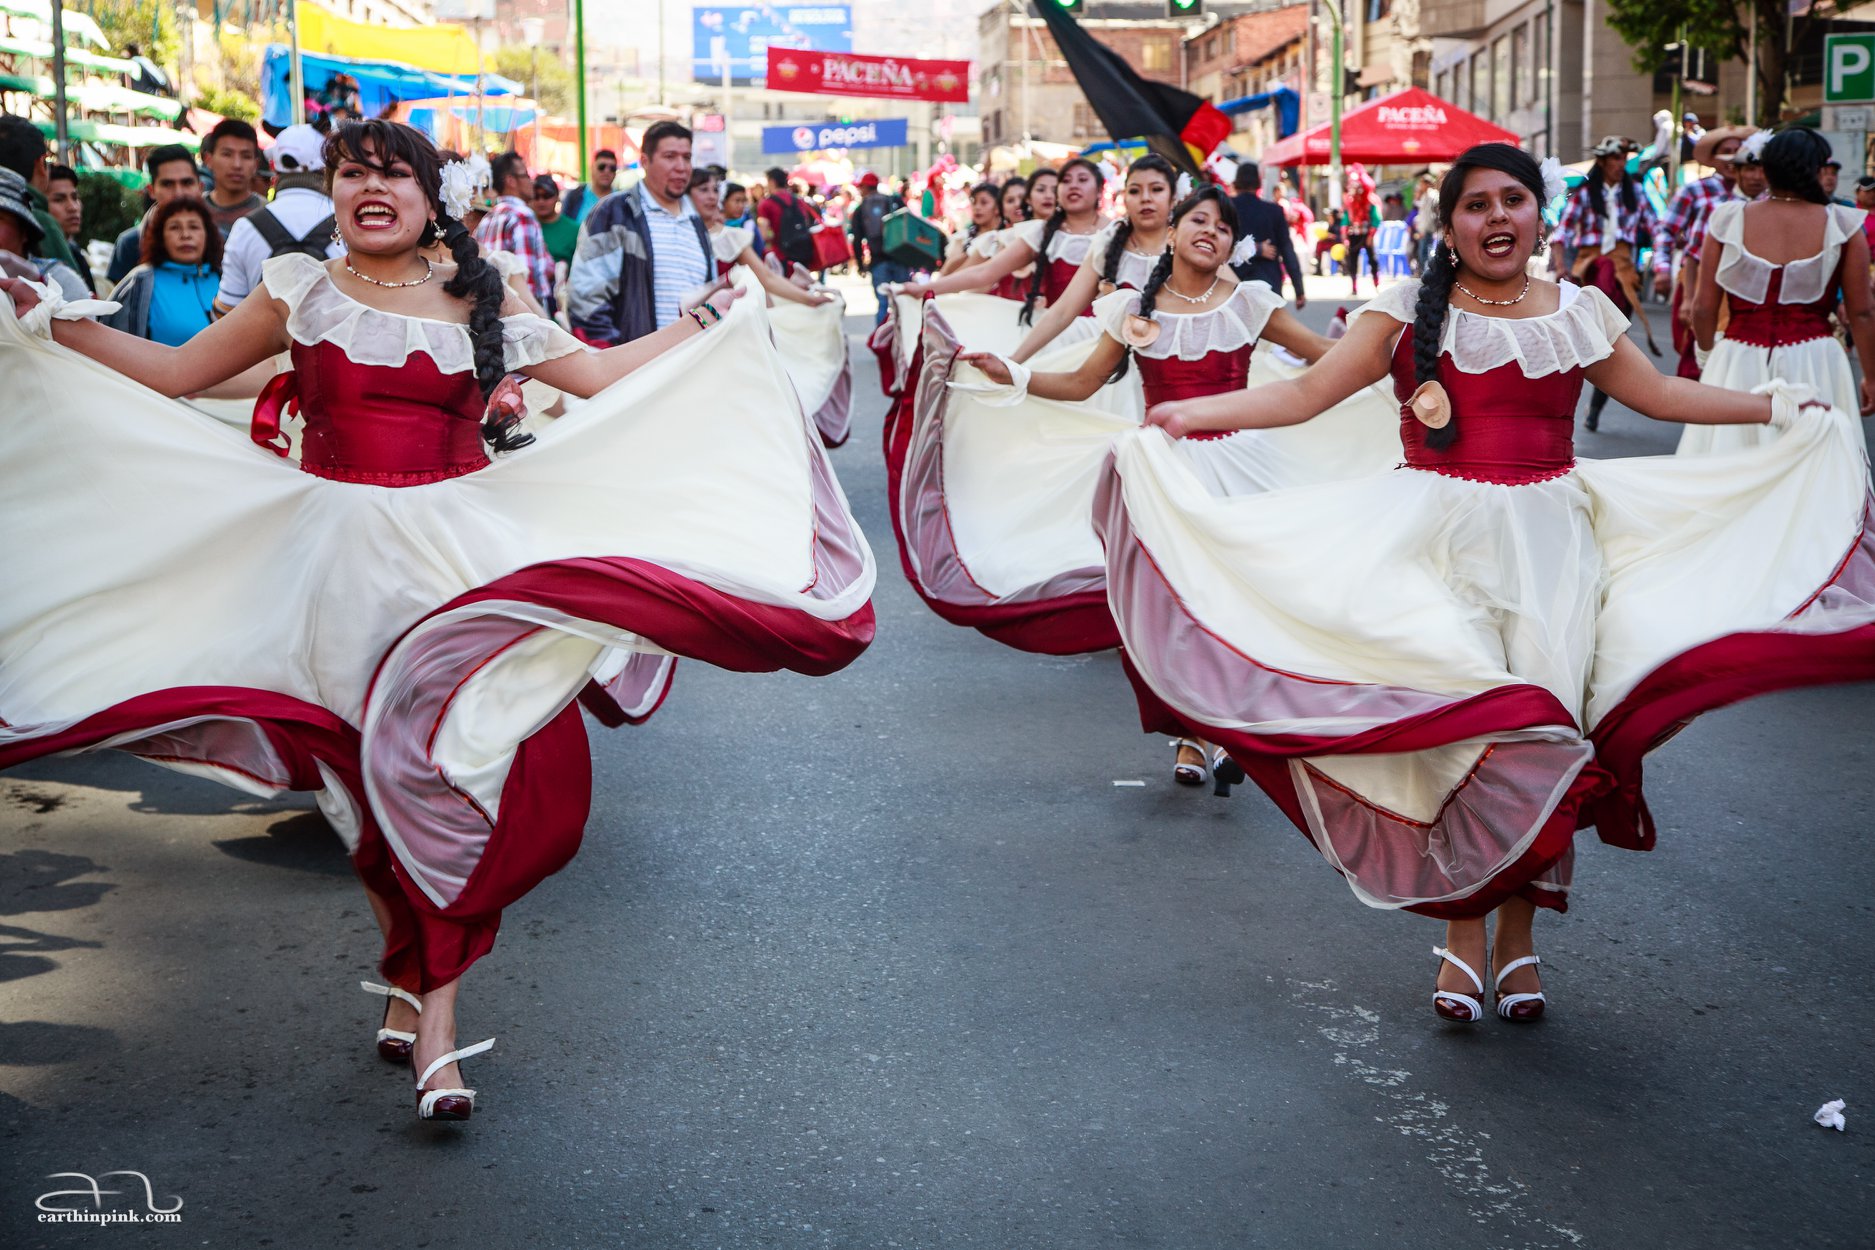 Dancers at a parade in La Paz, Bolivia